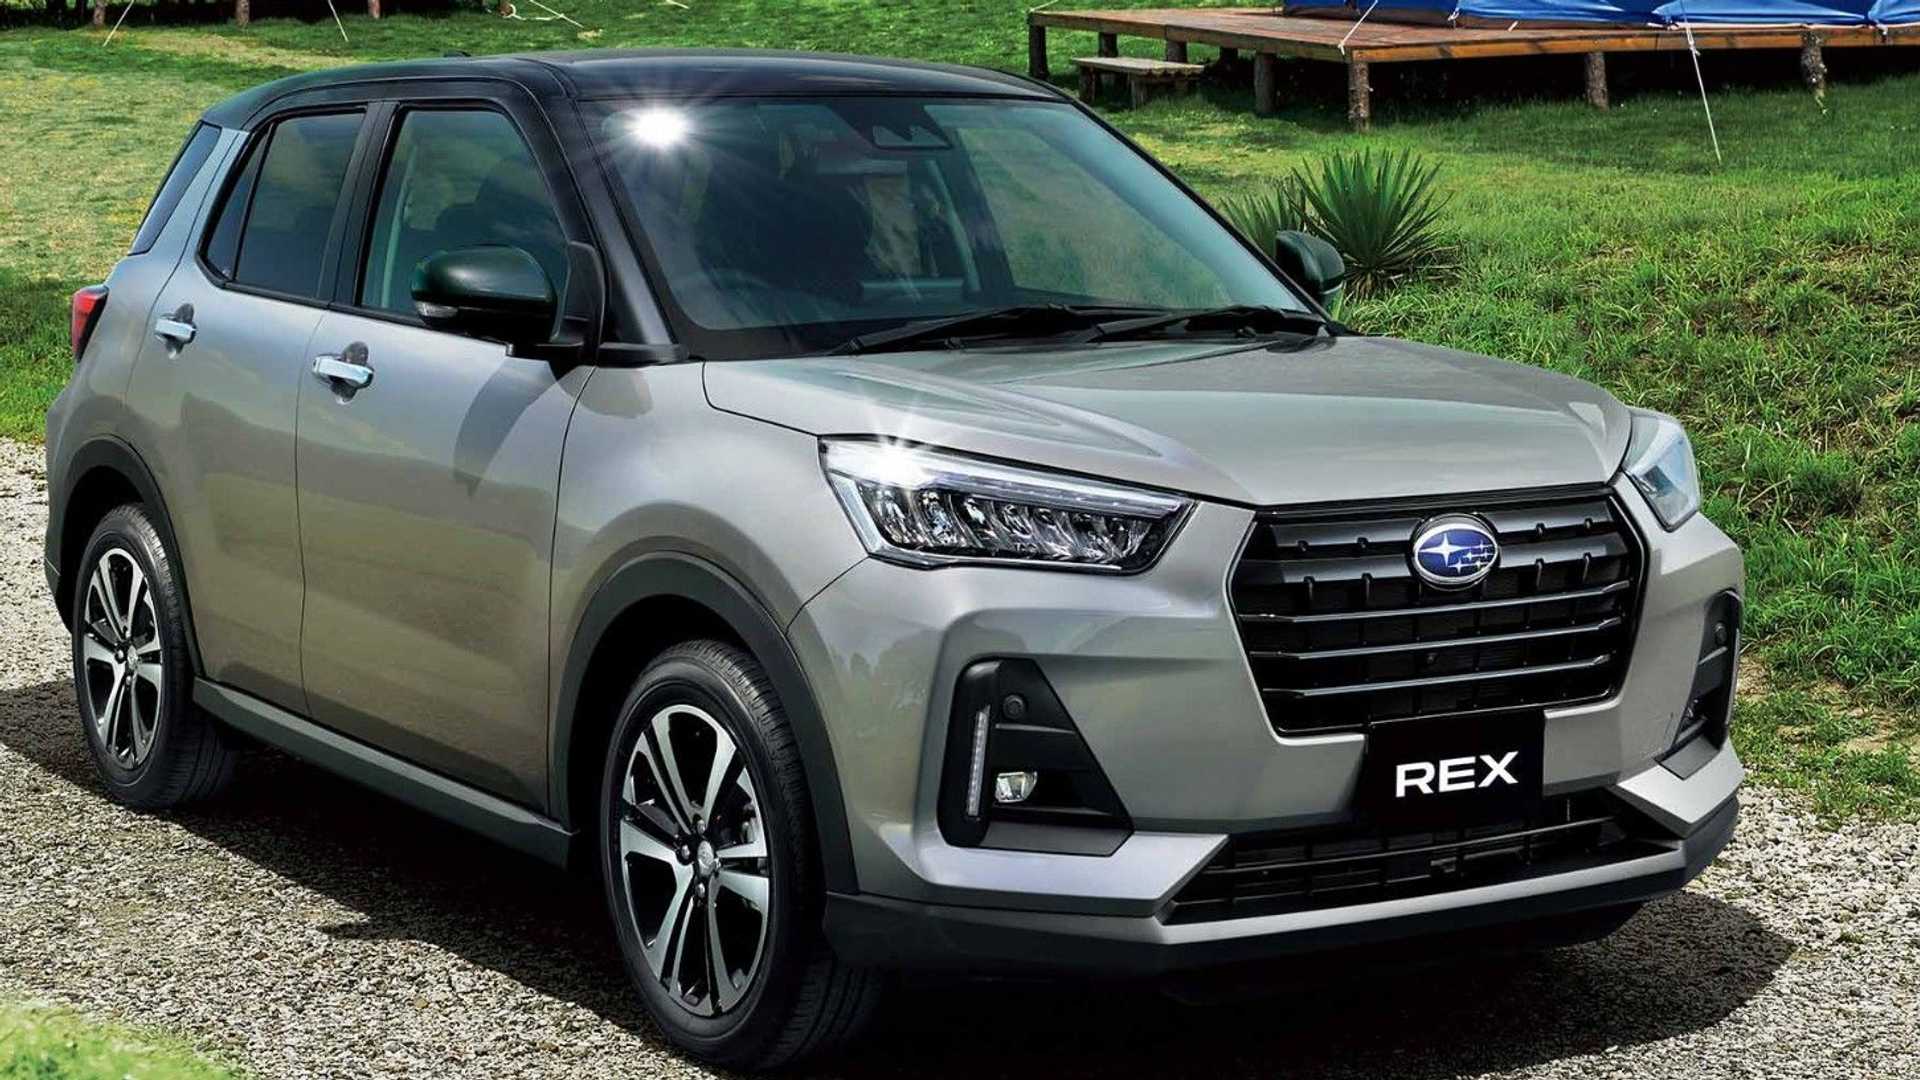 Inilah Subaru Rex, Kembaran Terbaru Dari Daihatsu Rocky Dan Toyota Raize